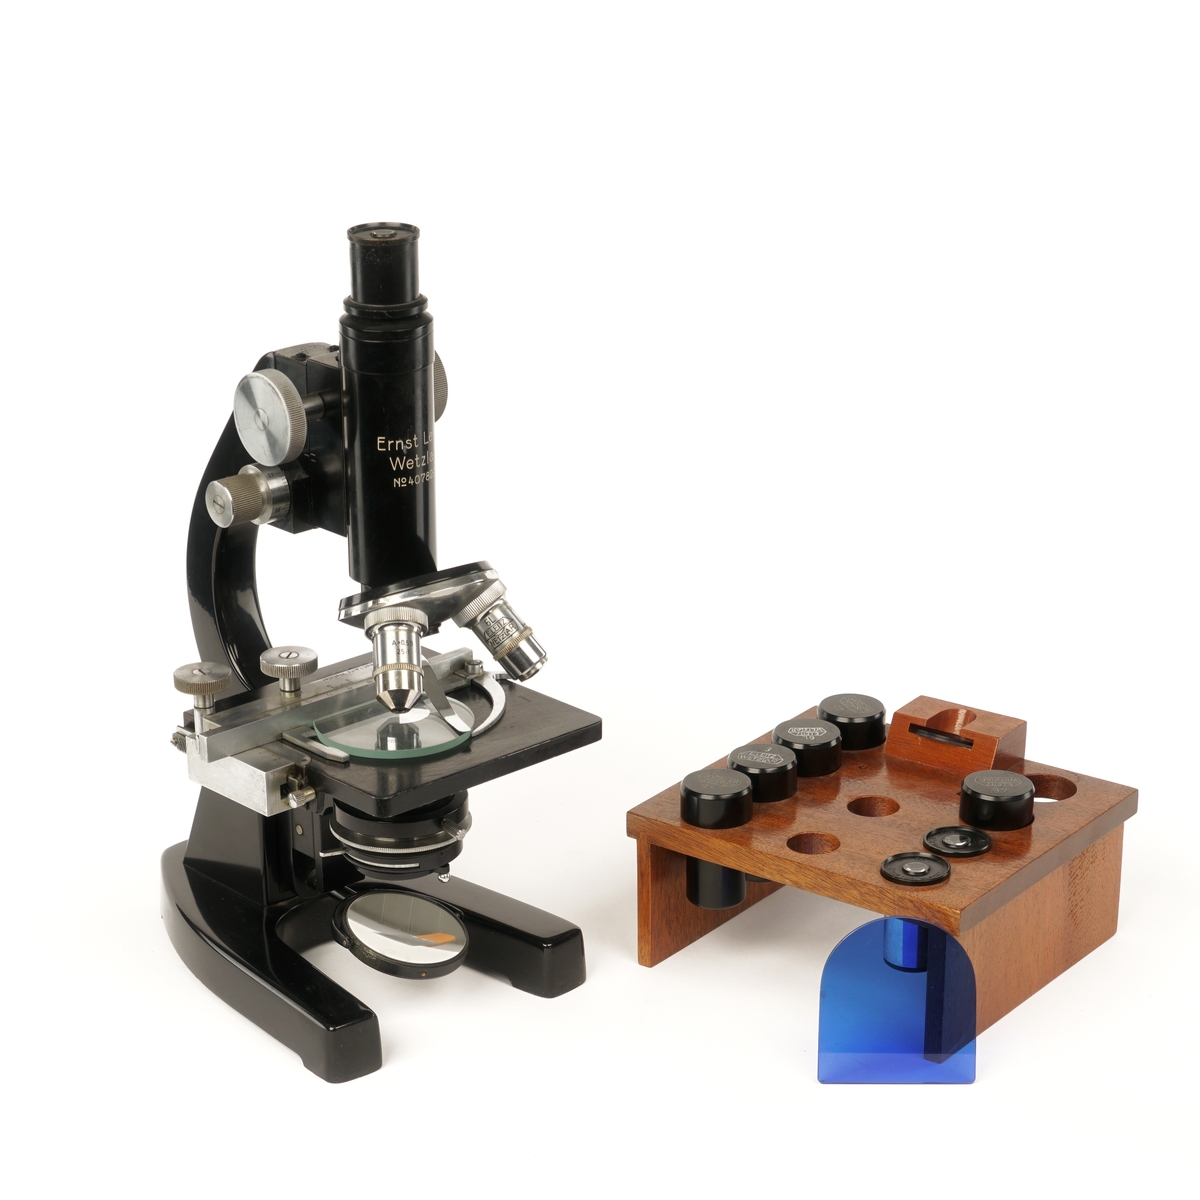 Mikroskop i trekasse med dør, håndtak og lås med nøkkel og div utstyr til mikroskopet.